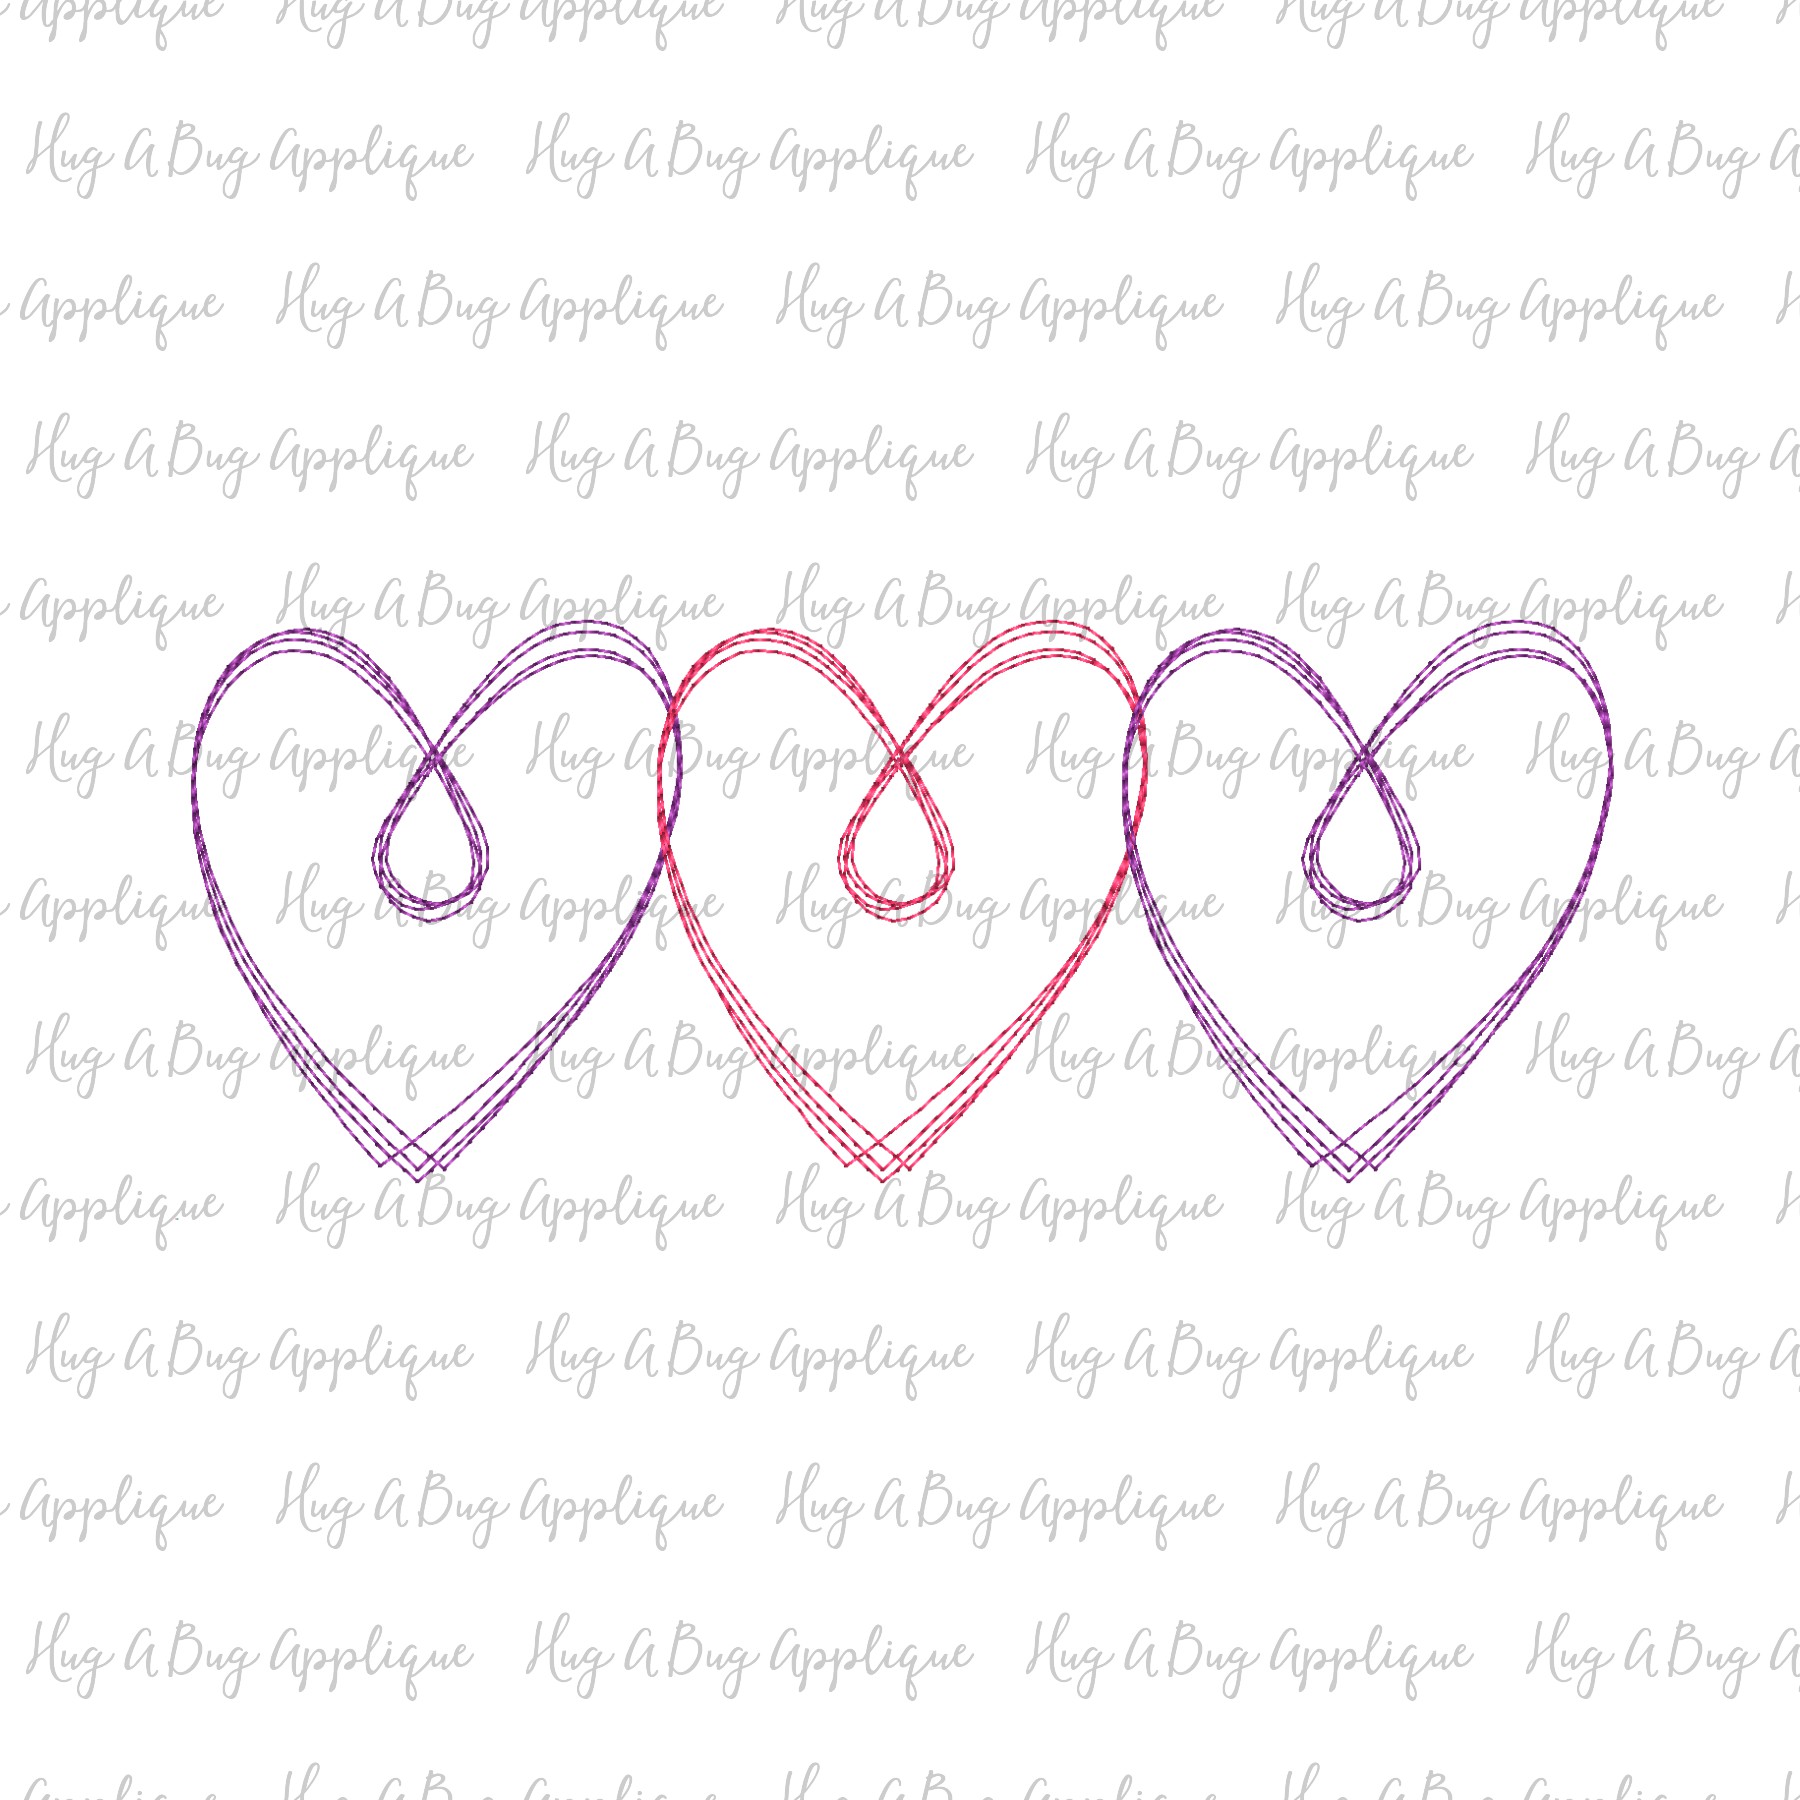 Heart Swirl Trio Scribble Stitch Embroidery Design Hug A Bug Applique